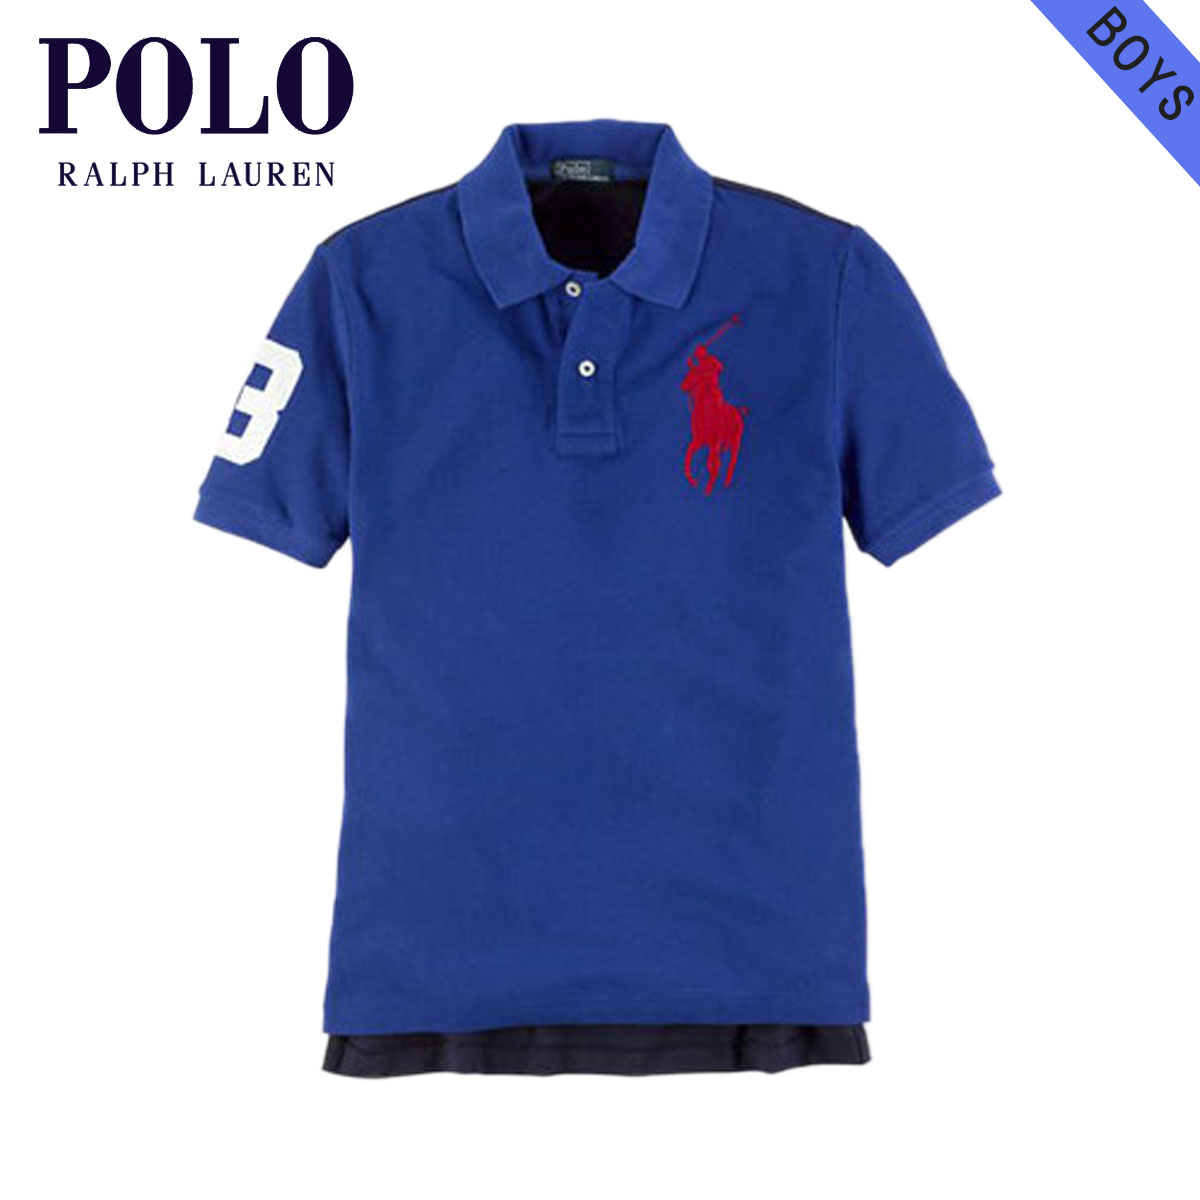 ralph lauren polo shirts junior